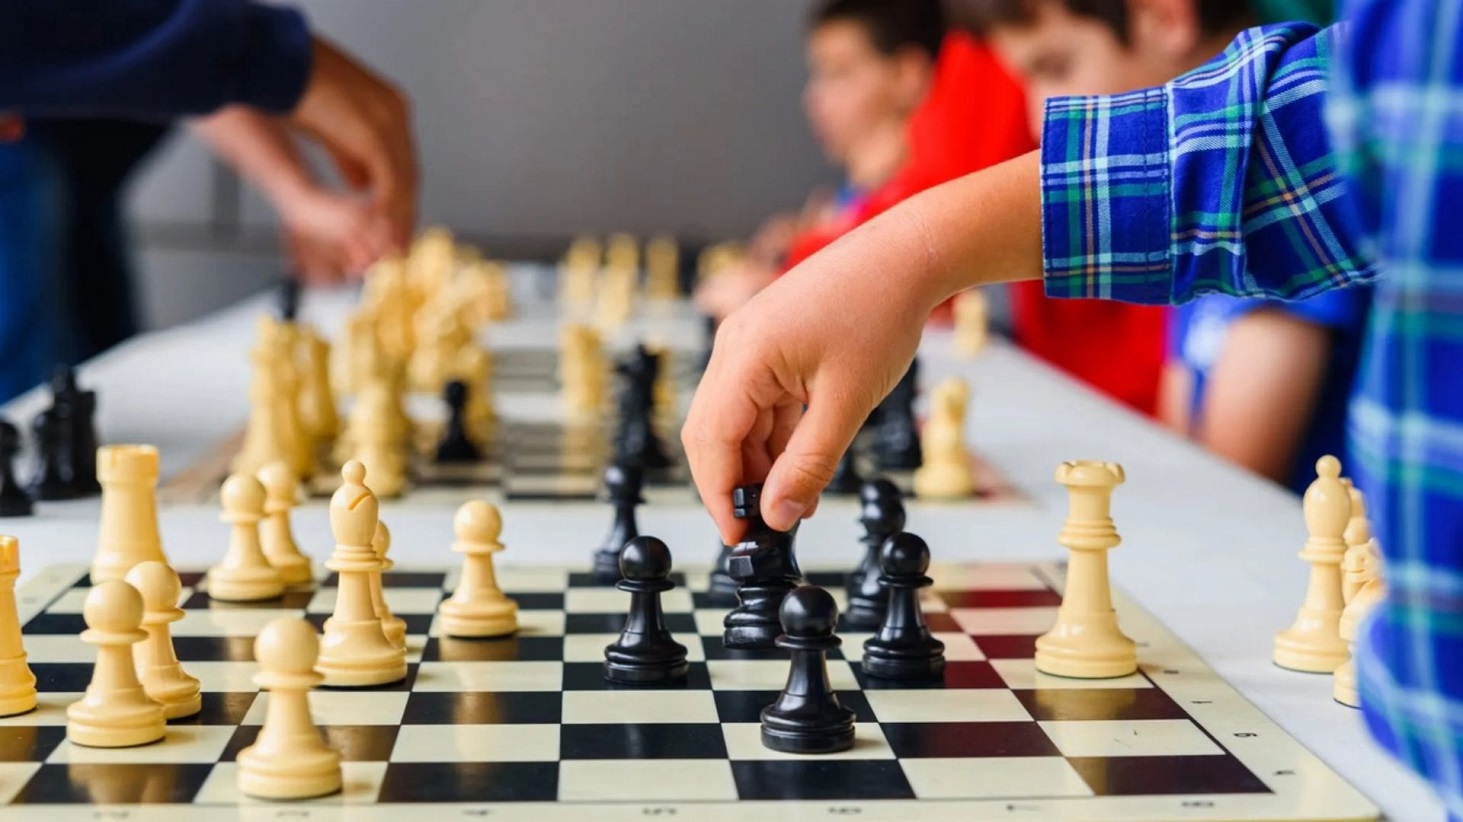 Обучение детей дошкольного возраста основам игры в шахматы>